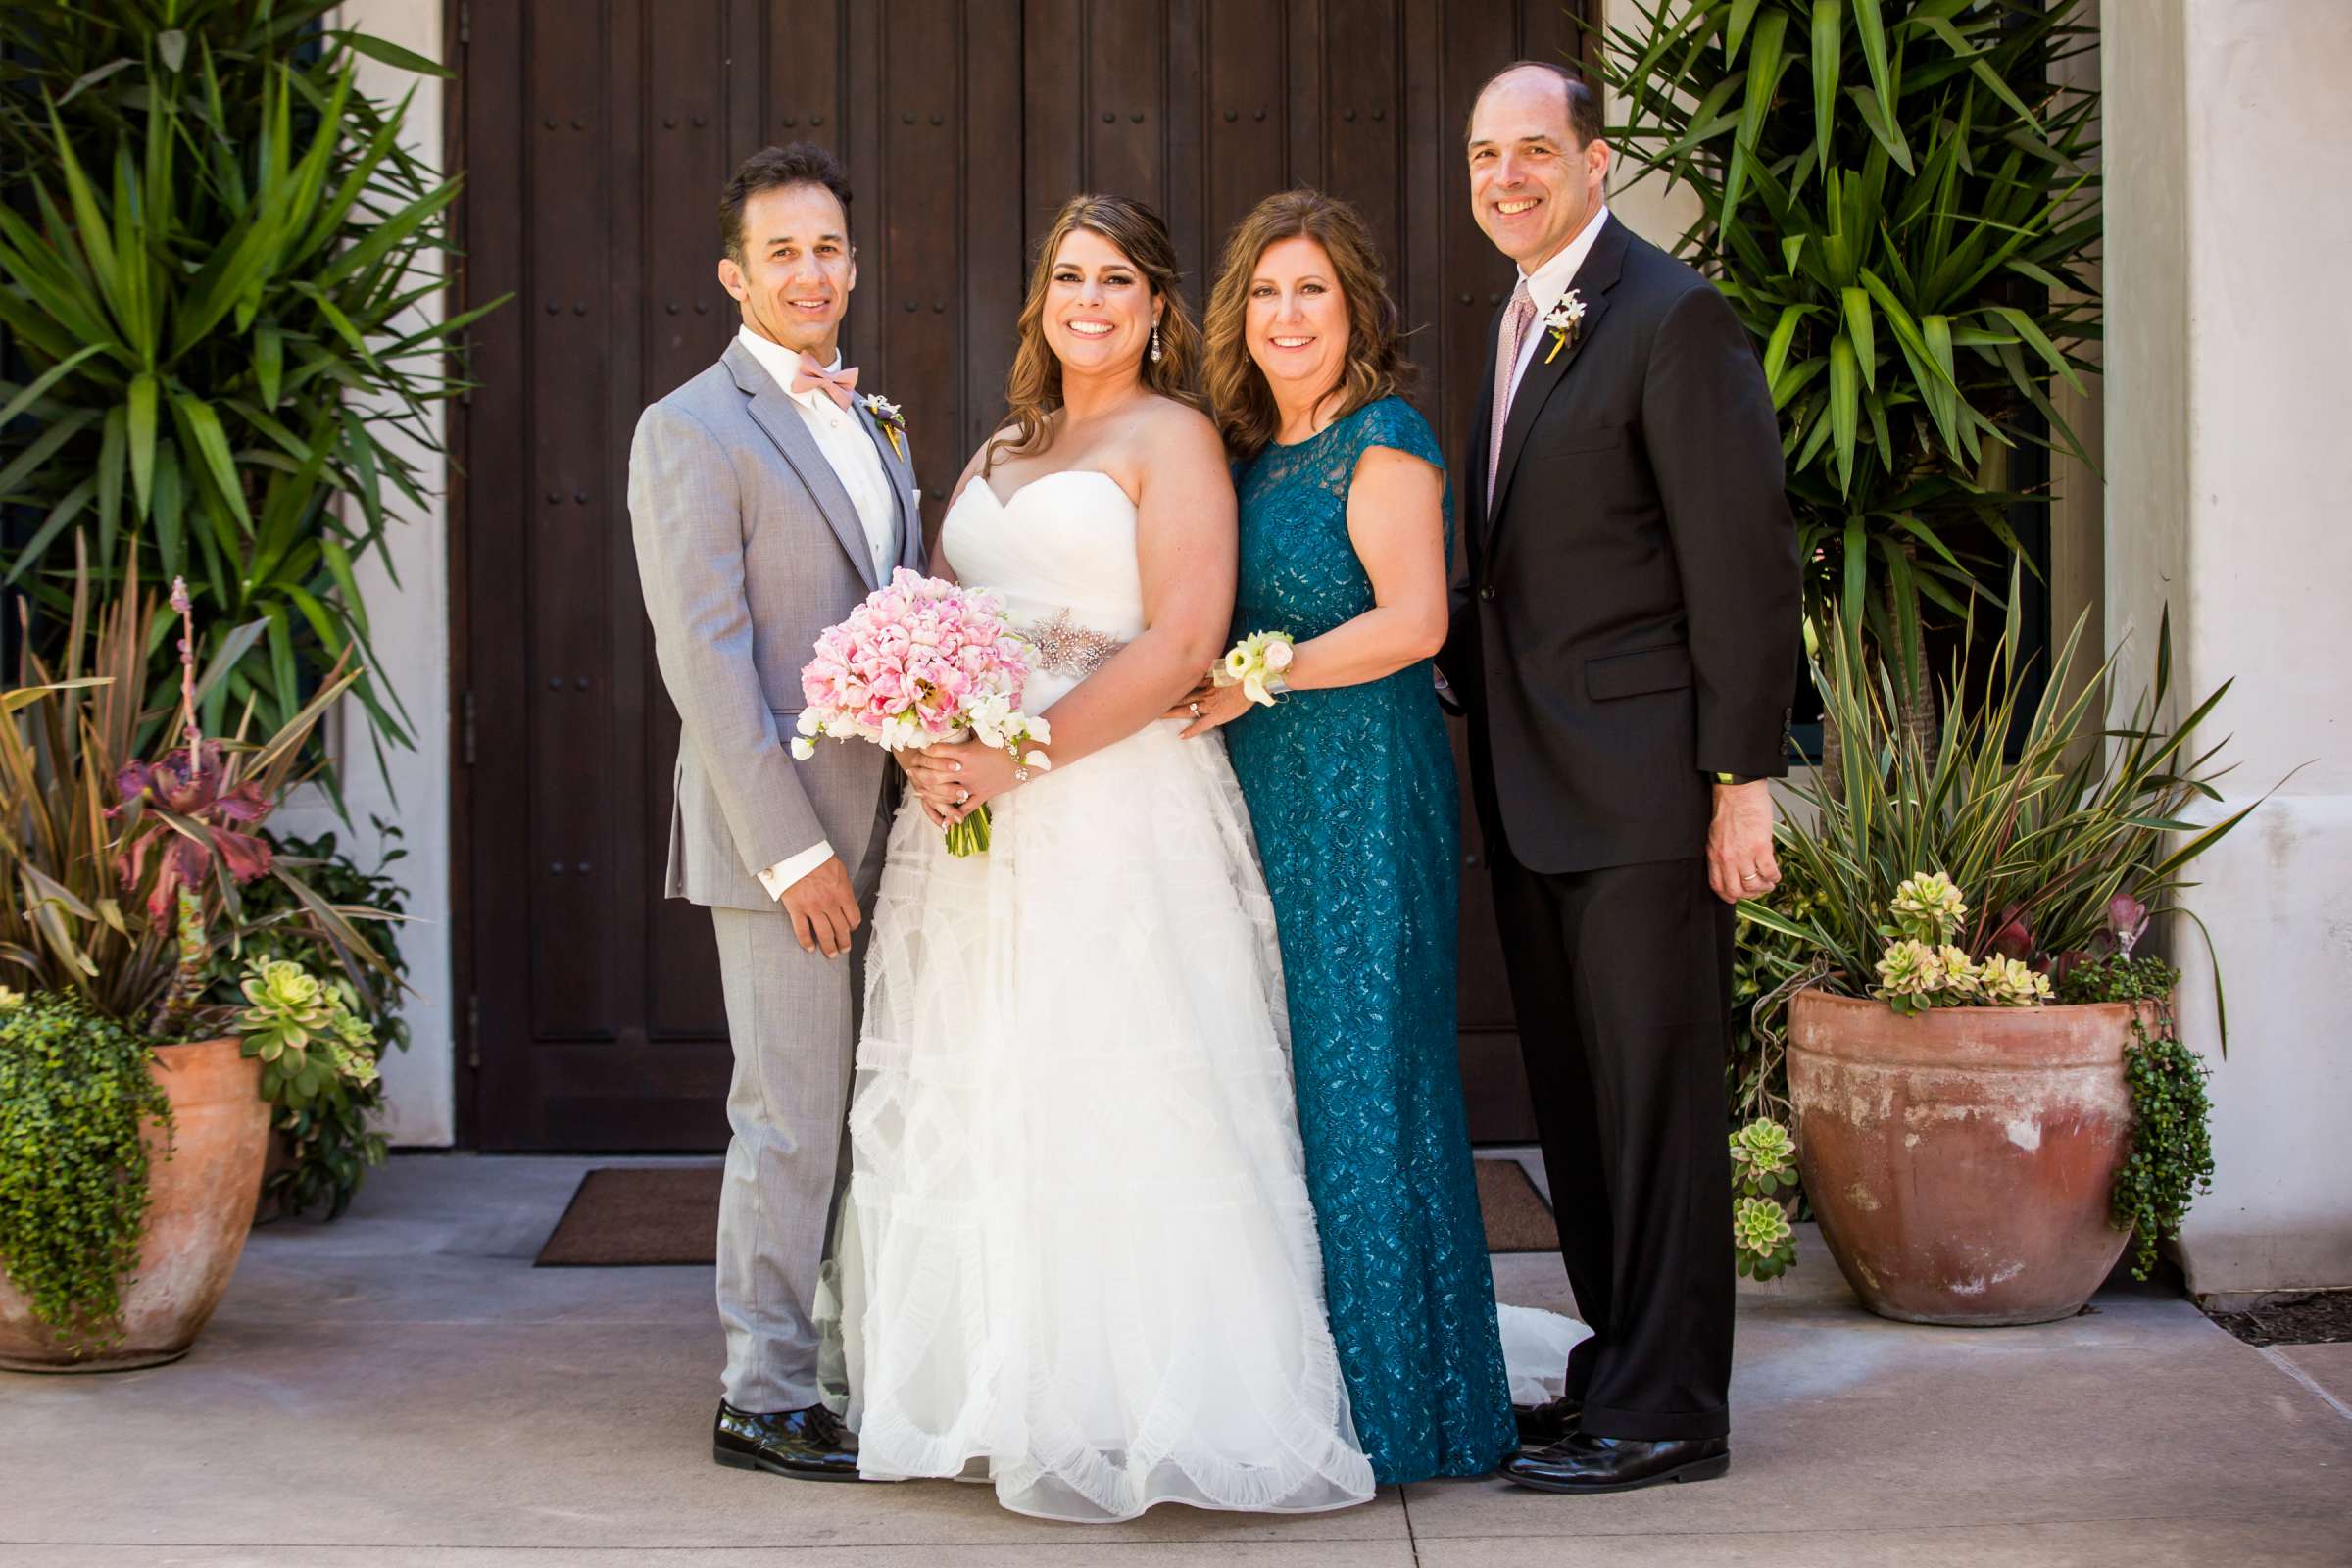 Rancho Santa Fe Golf Club Wedding coordinated by Monarch Weddings, Carolynn and Jon Wedding Photo #59 by True Photography